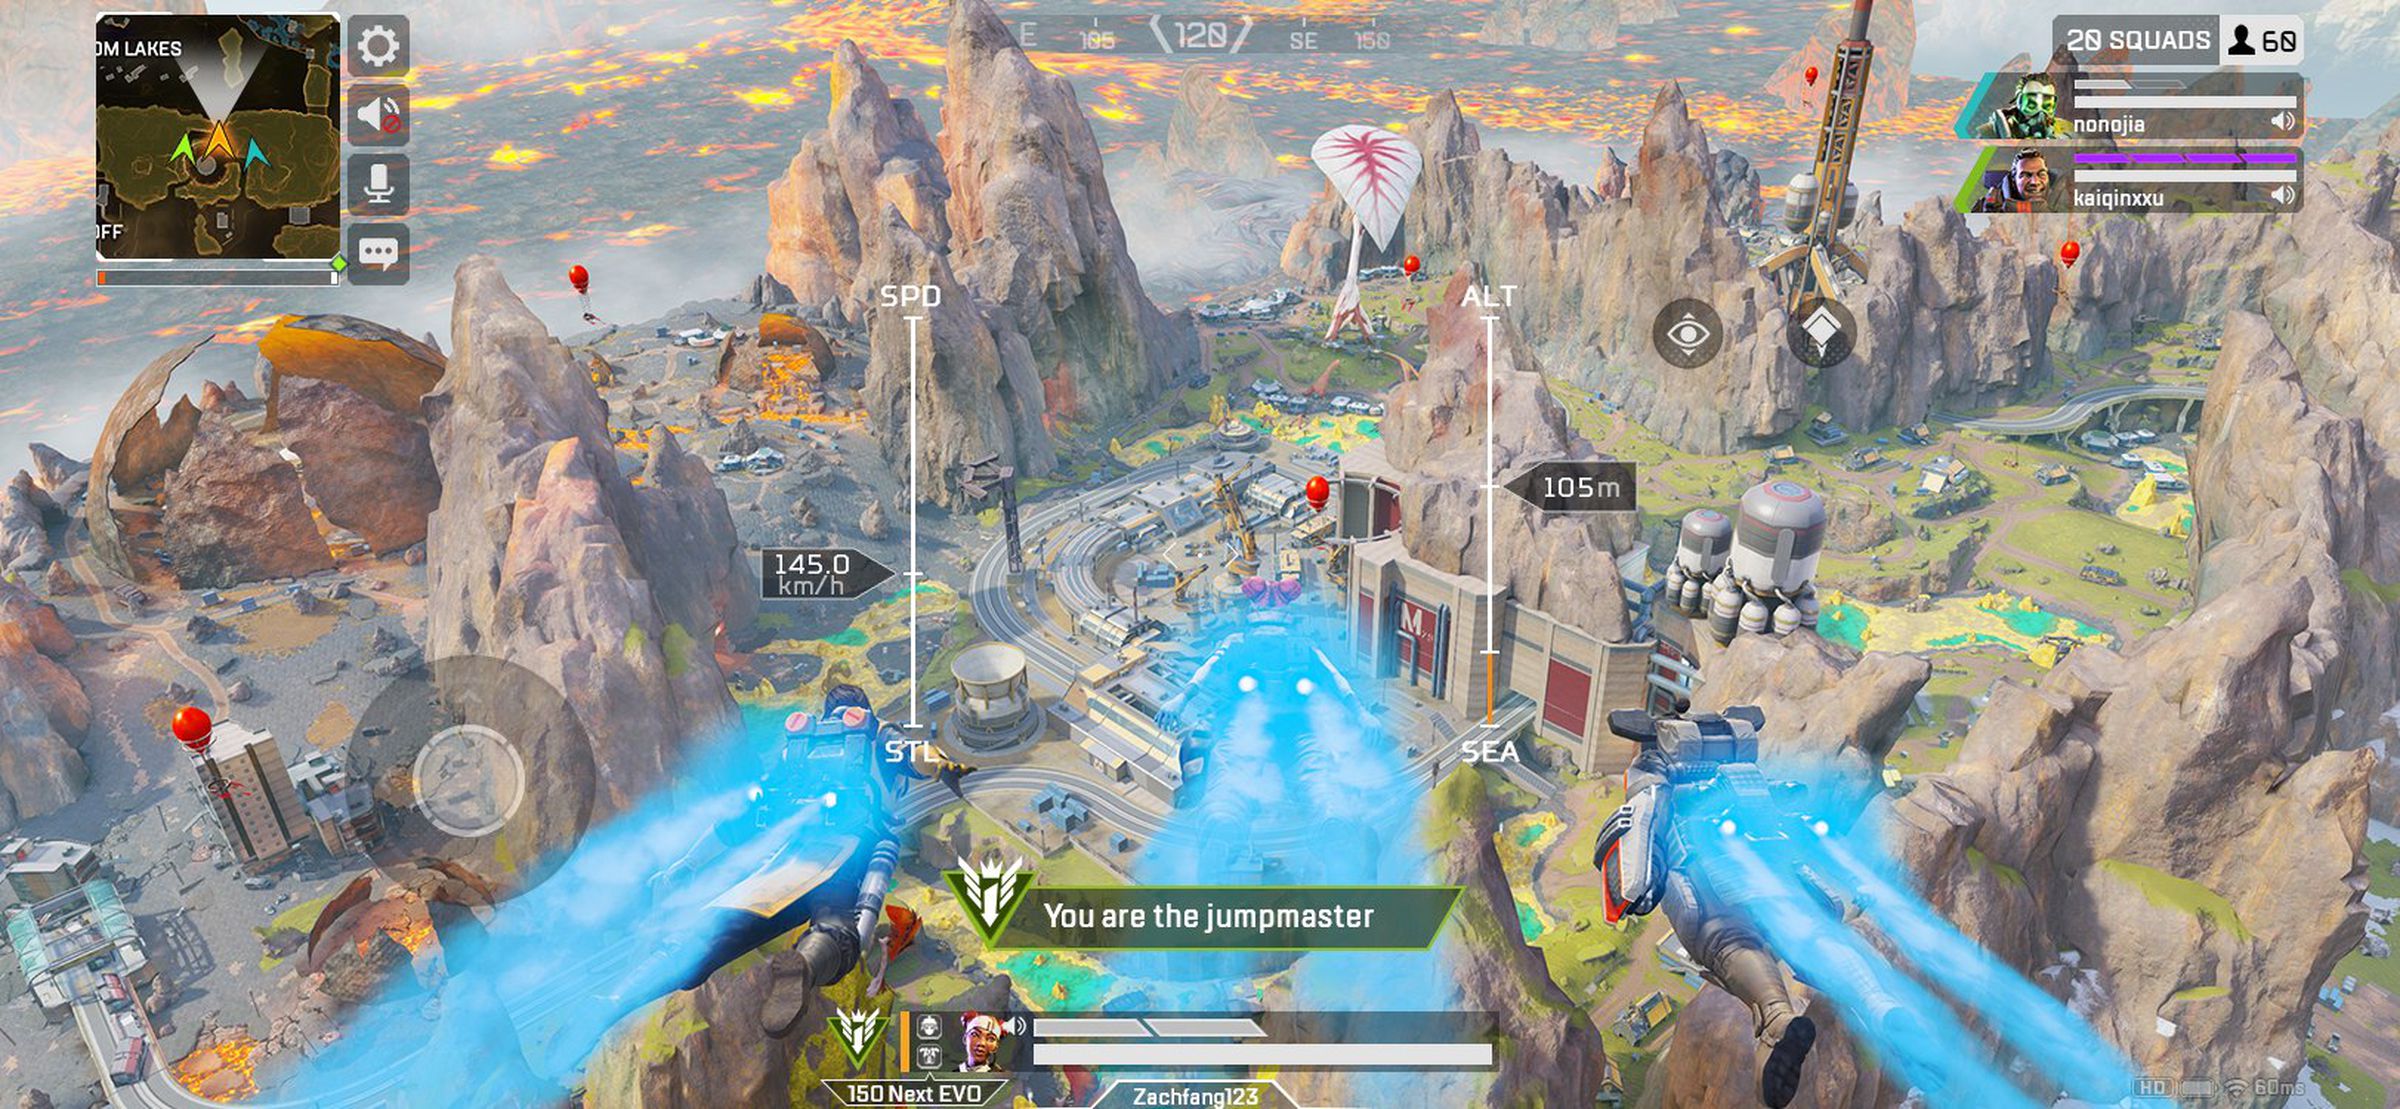 Capture d'écran d'Apex Legends Mobile : une rivière coule dans un paysage rocheux ;  la légende se lit comme suit : 